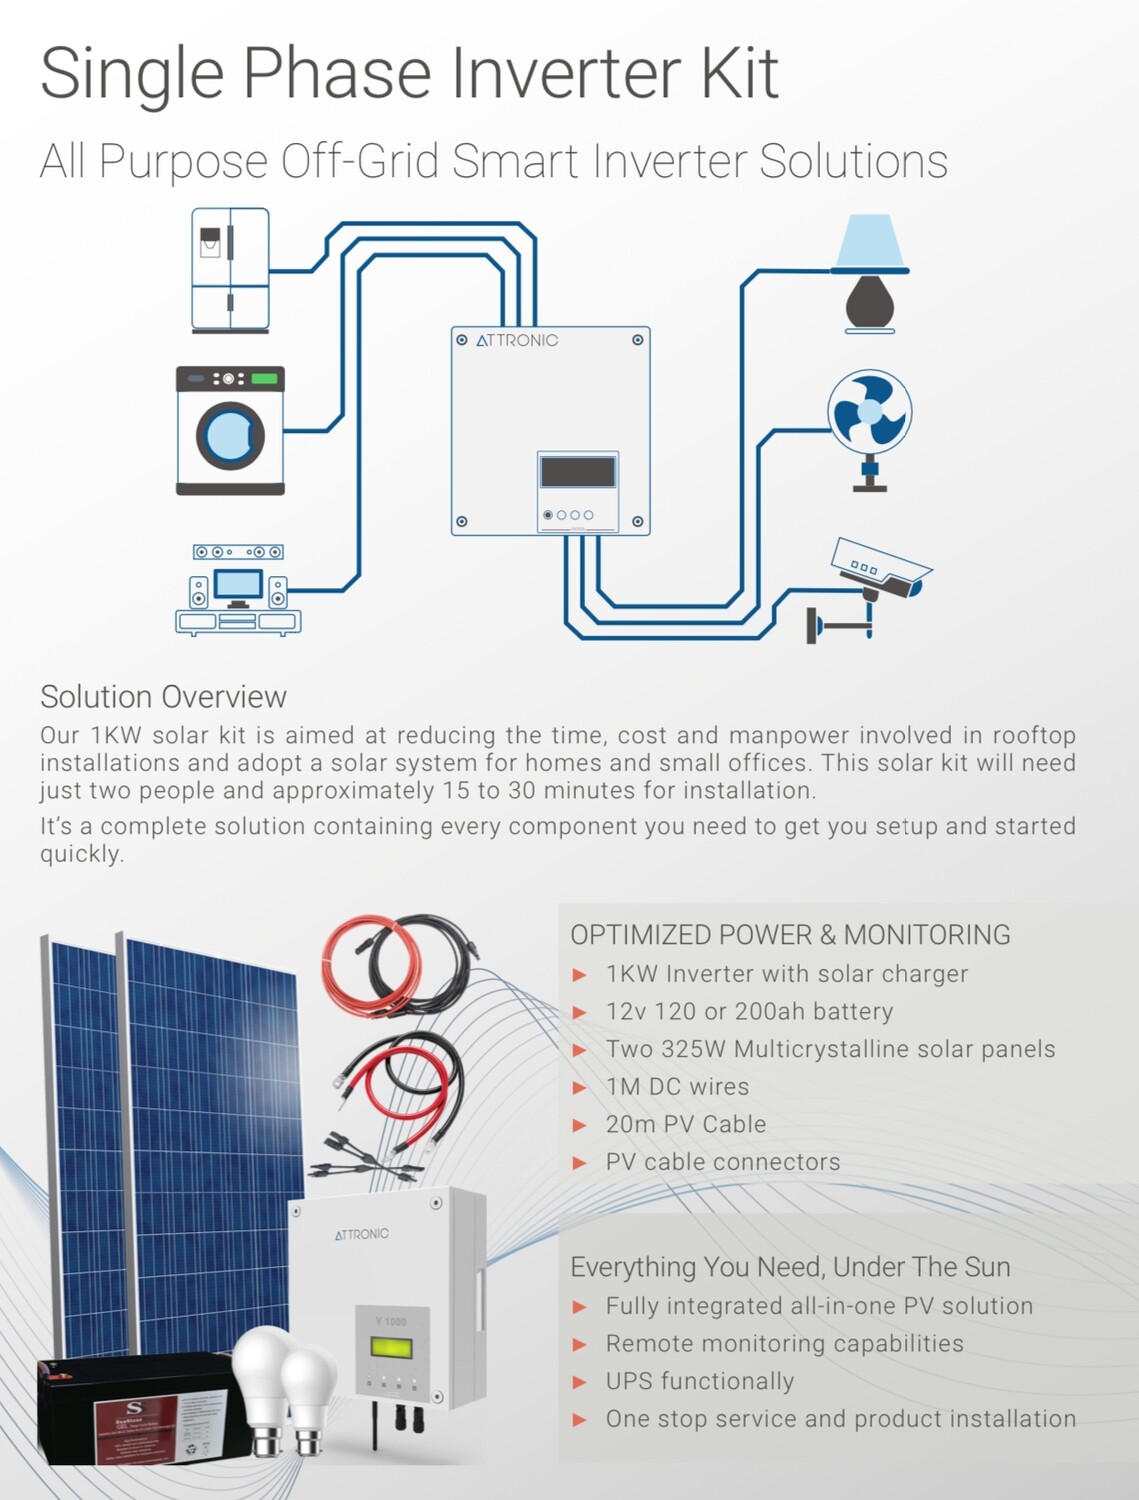 Off-Grid “Smart Inverter Solutions